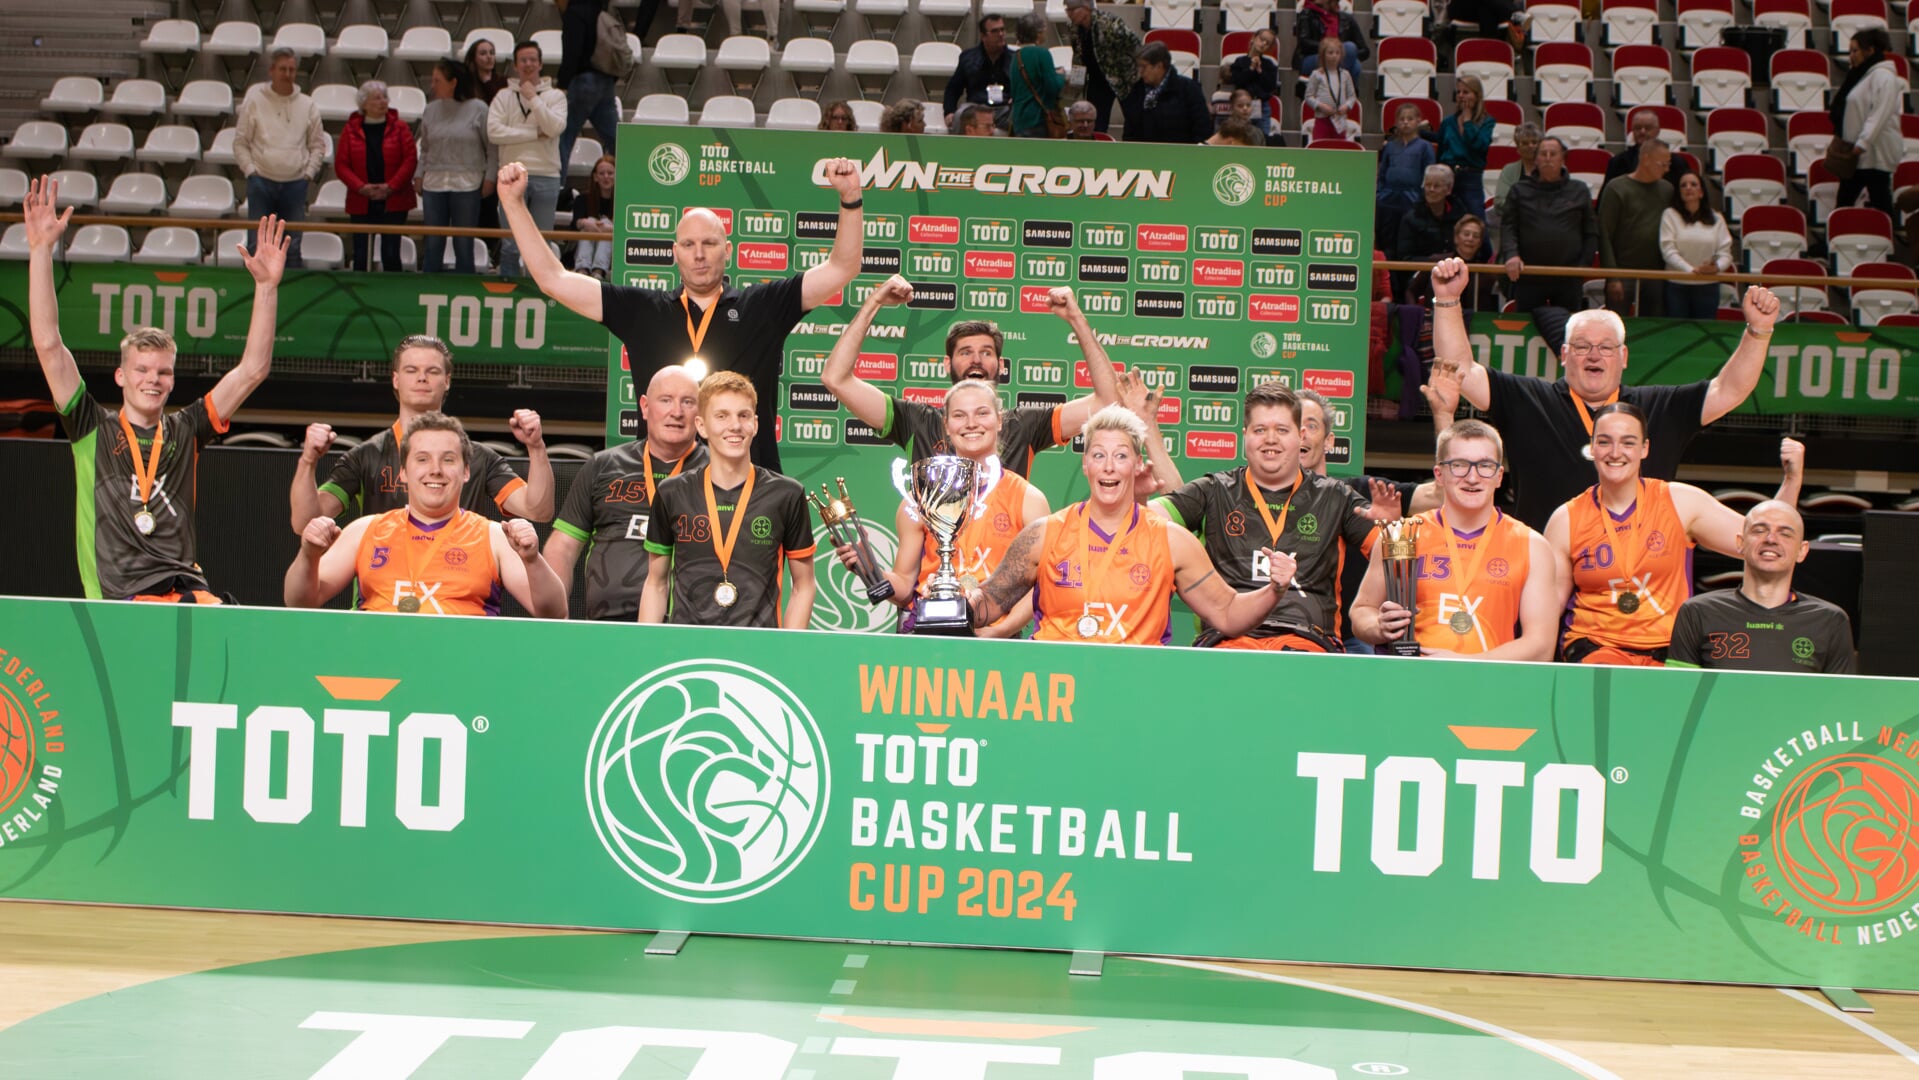 DeVeDo heeft de eerste prijs van het seizoen gepakt door zaterdag 23 maart de finale van de TOTO Basketbal Cup te winnen.